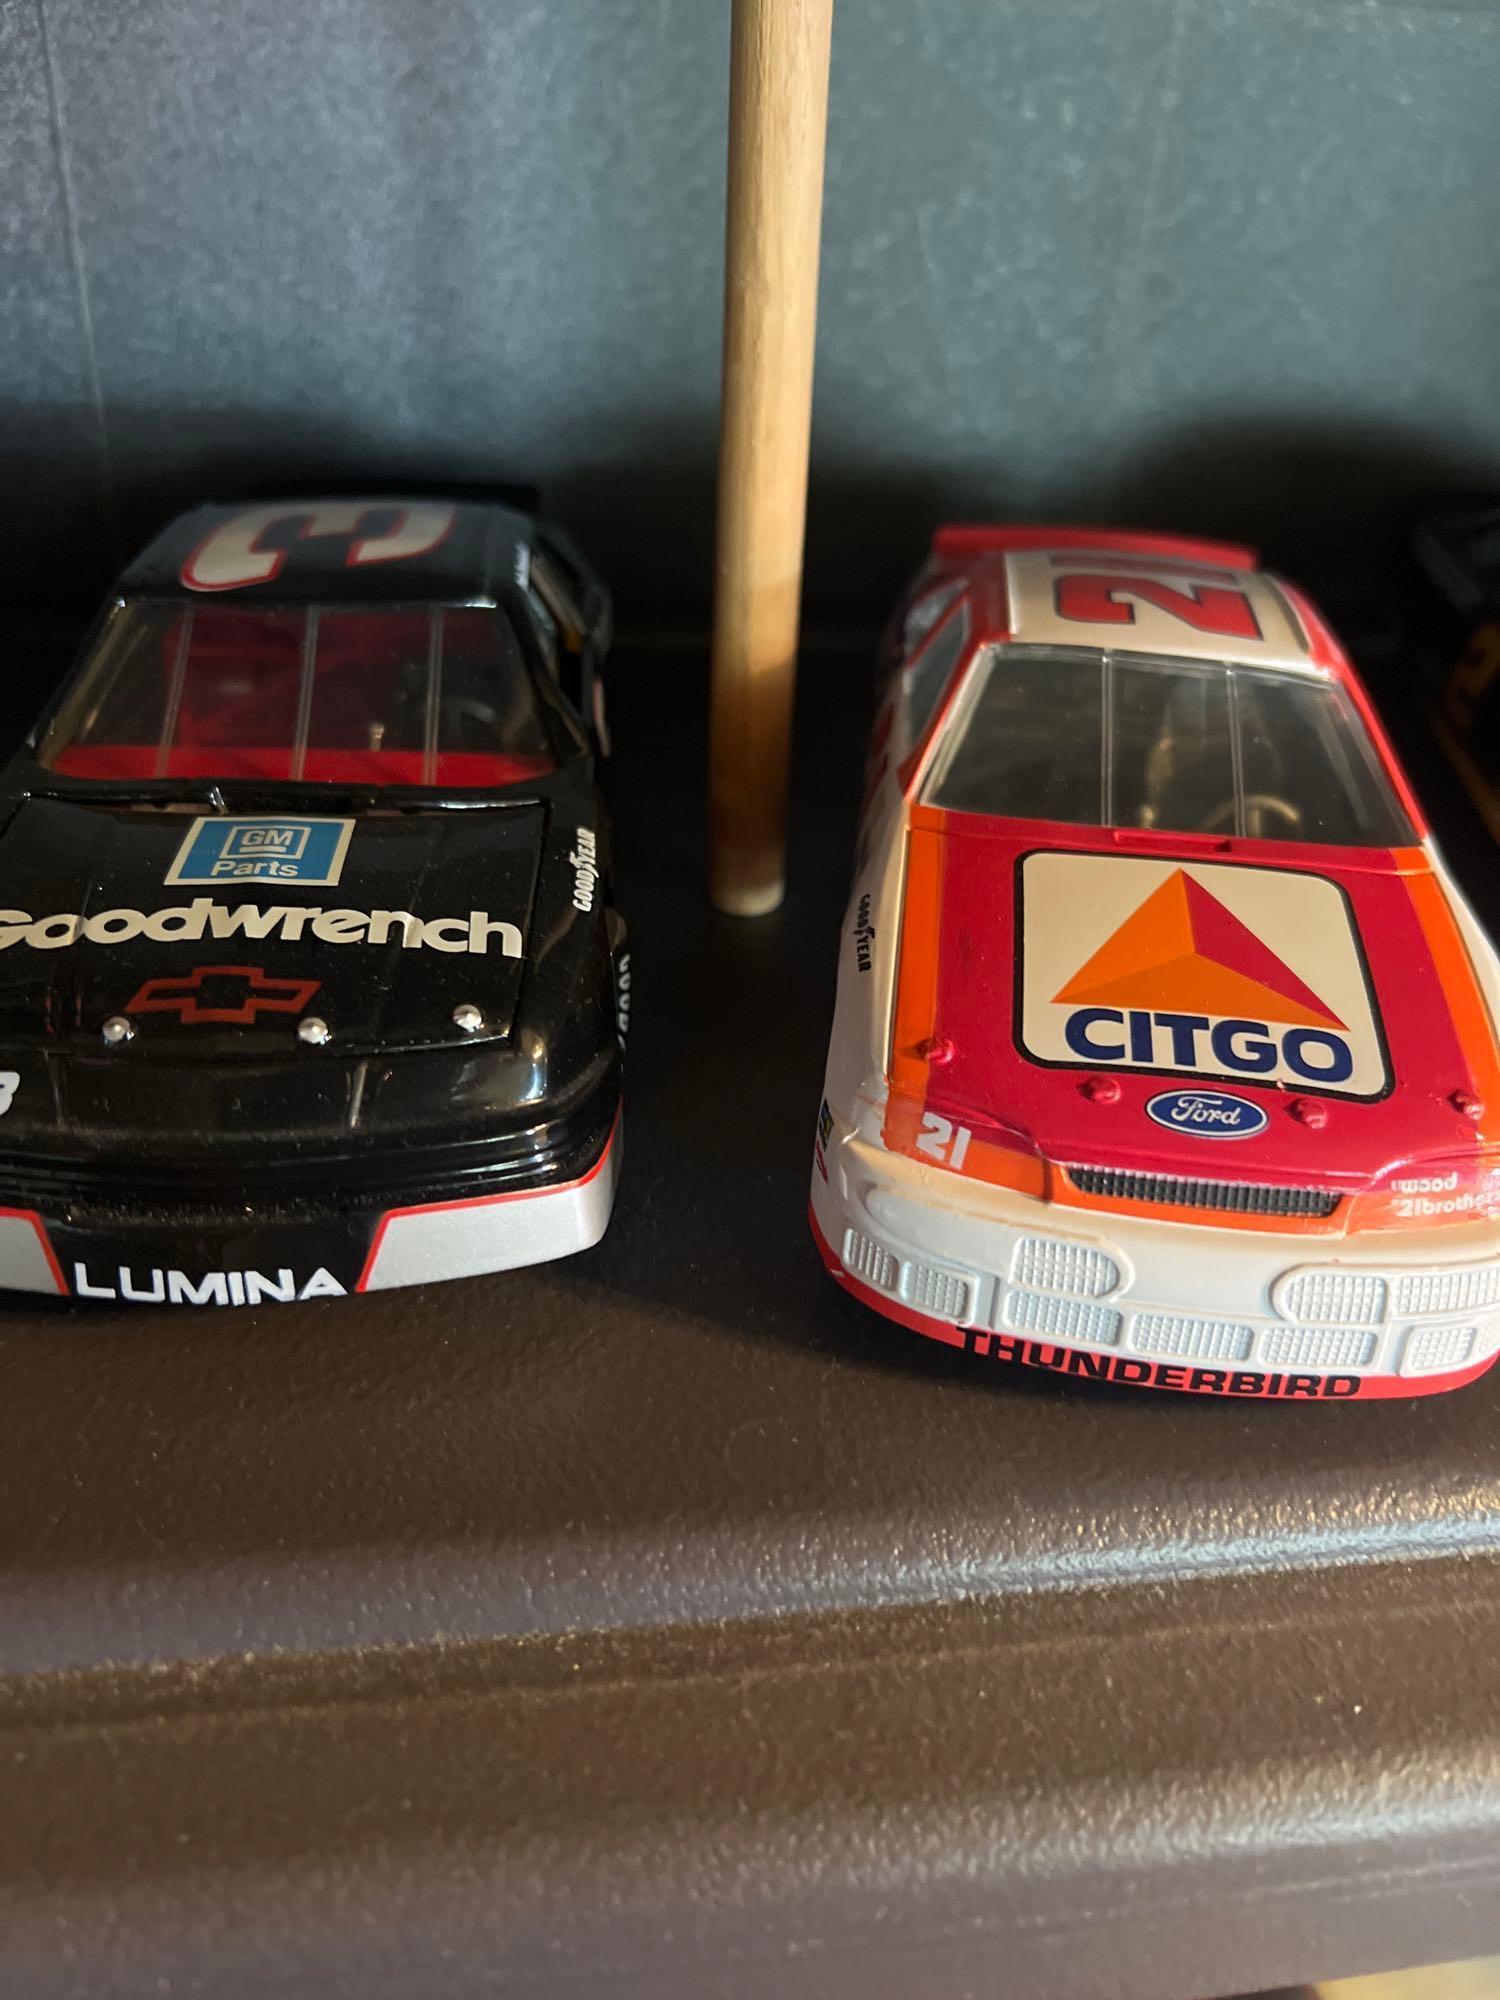 12 collector NASCAR cars